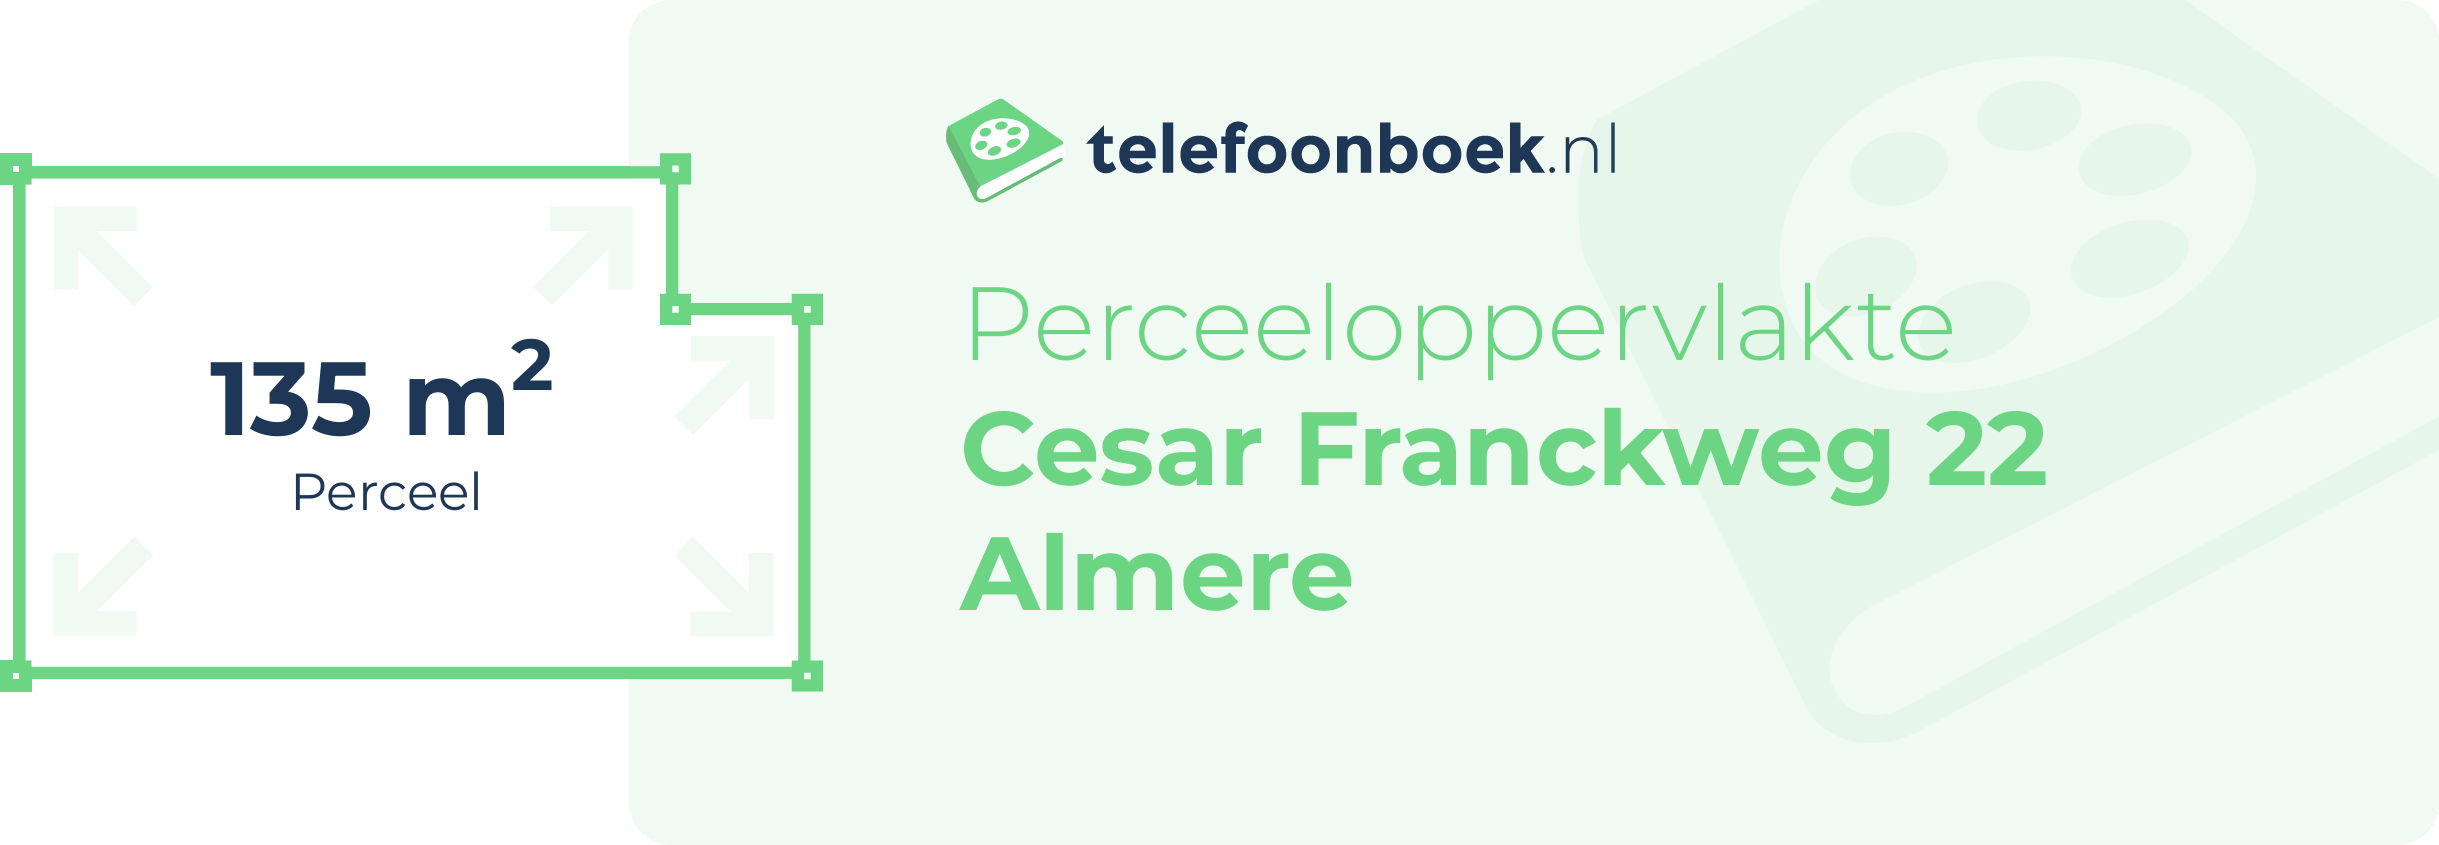 Perceeloppervlakte Cesar Franckweg 22 Almere